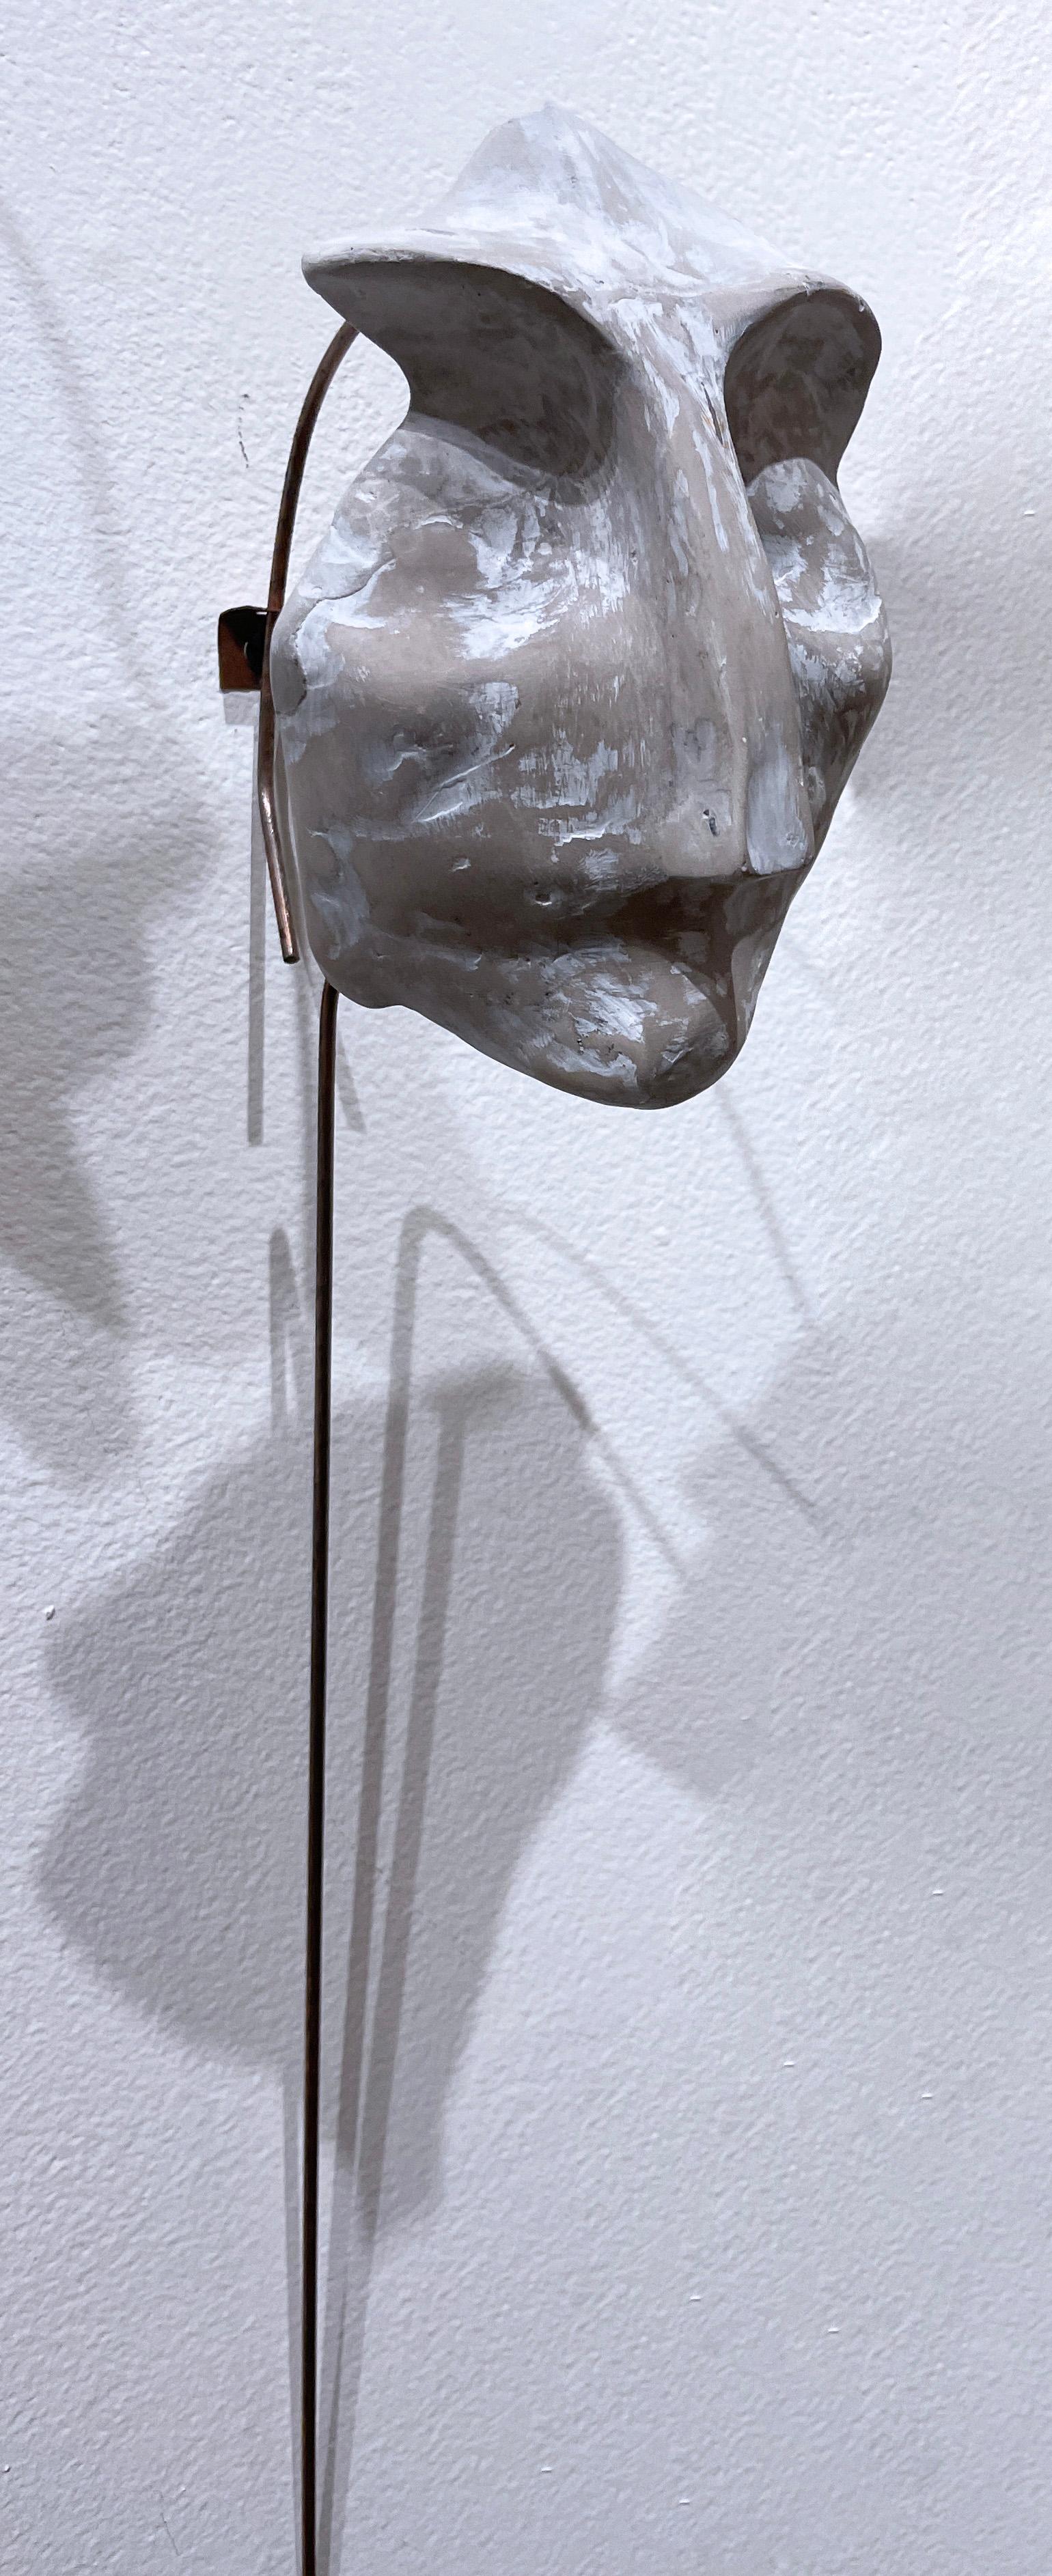 Sage blanchi à la chaux (2022), sculpture de visage en béton blanc gris, fil métallique, terreux - Sculpture de Dena Paige Fischer